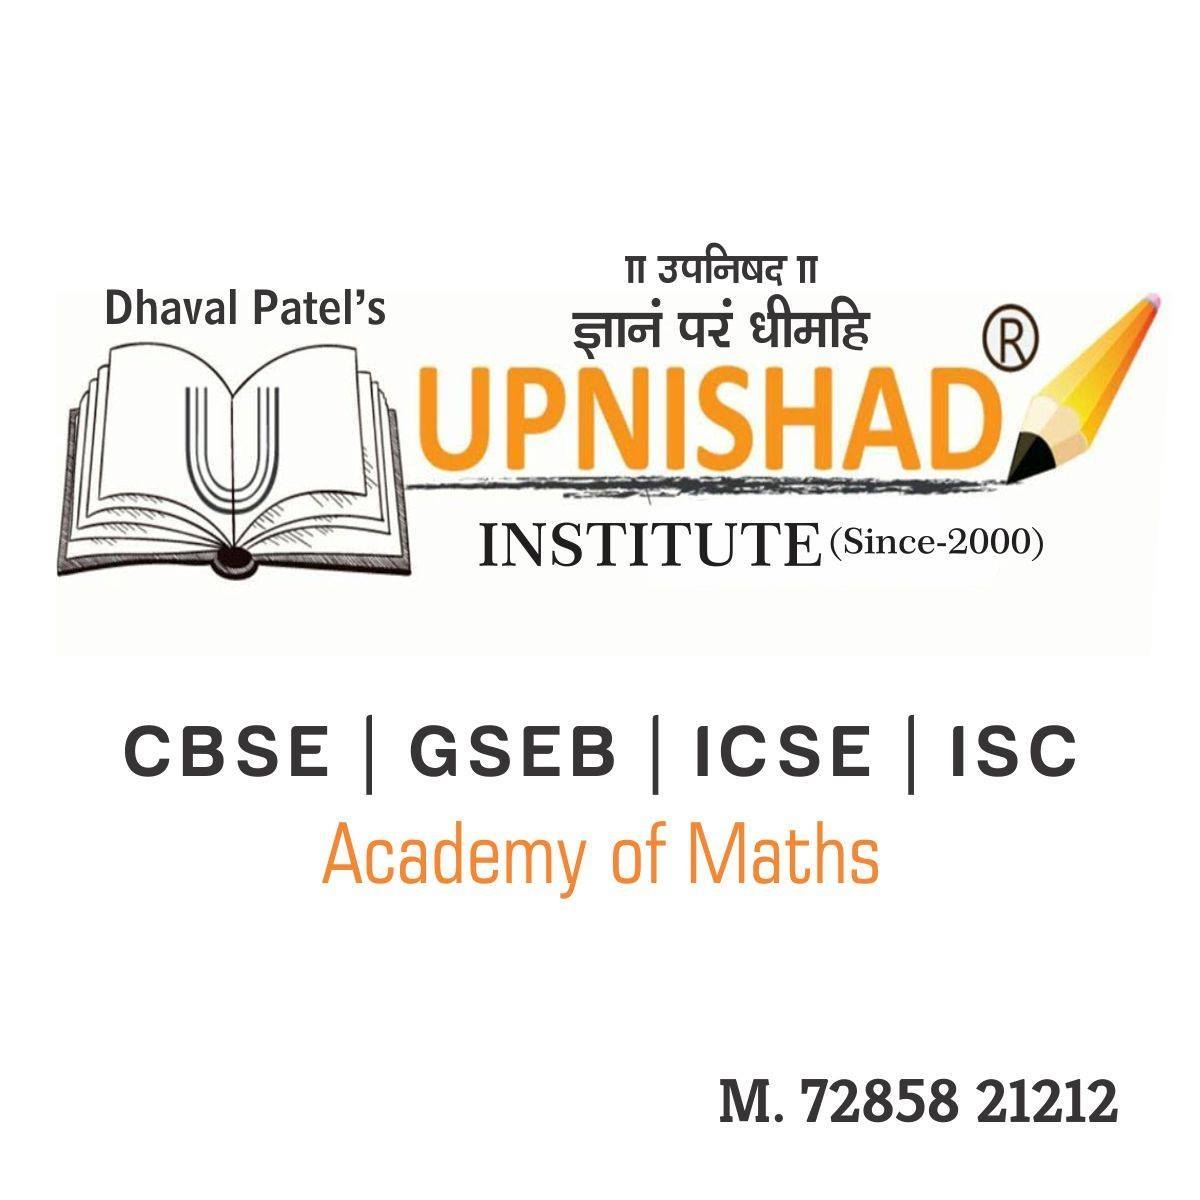 Upnishad Institute